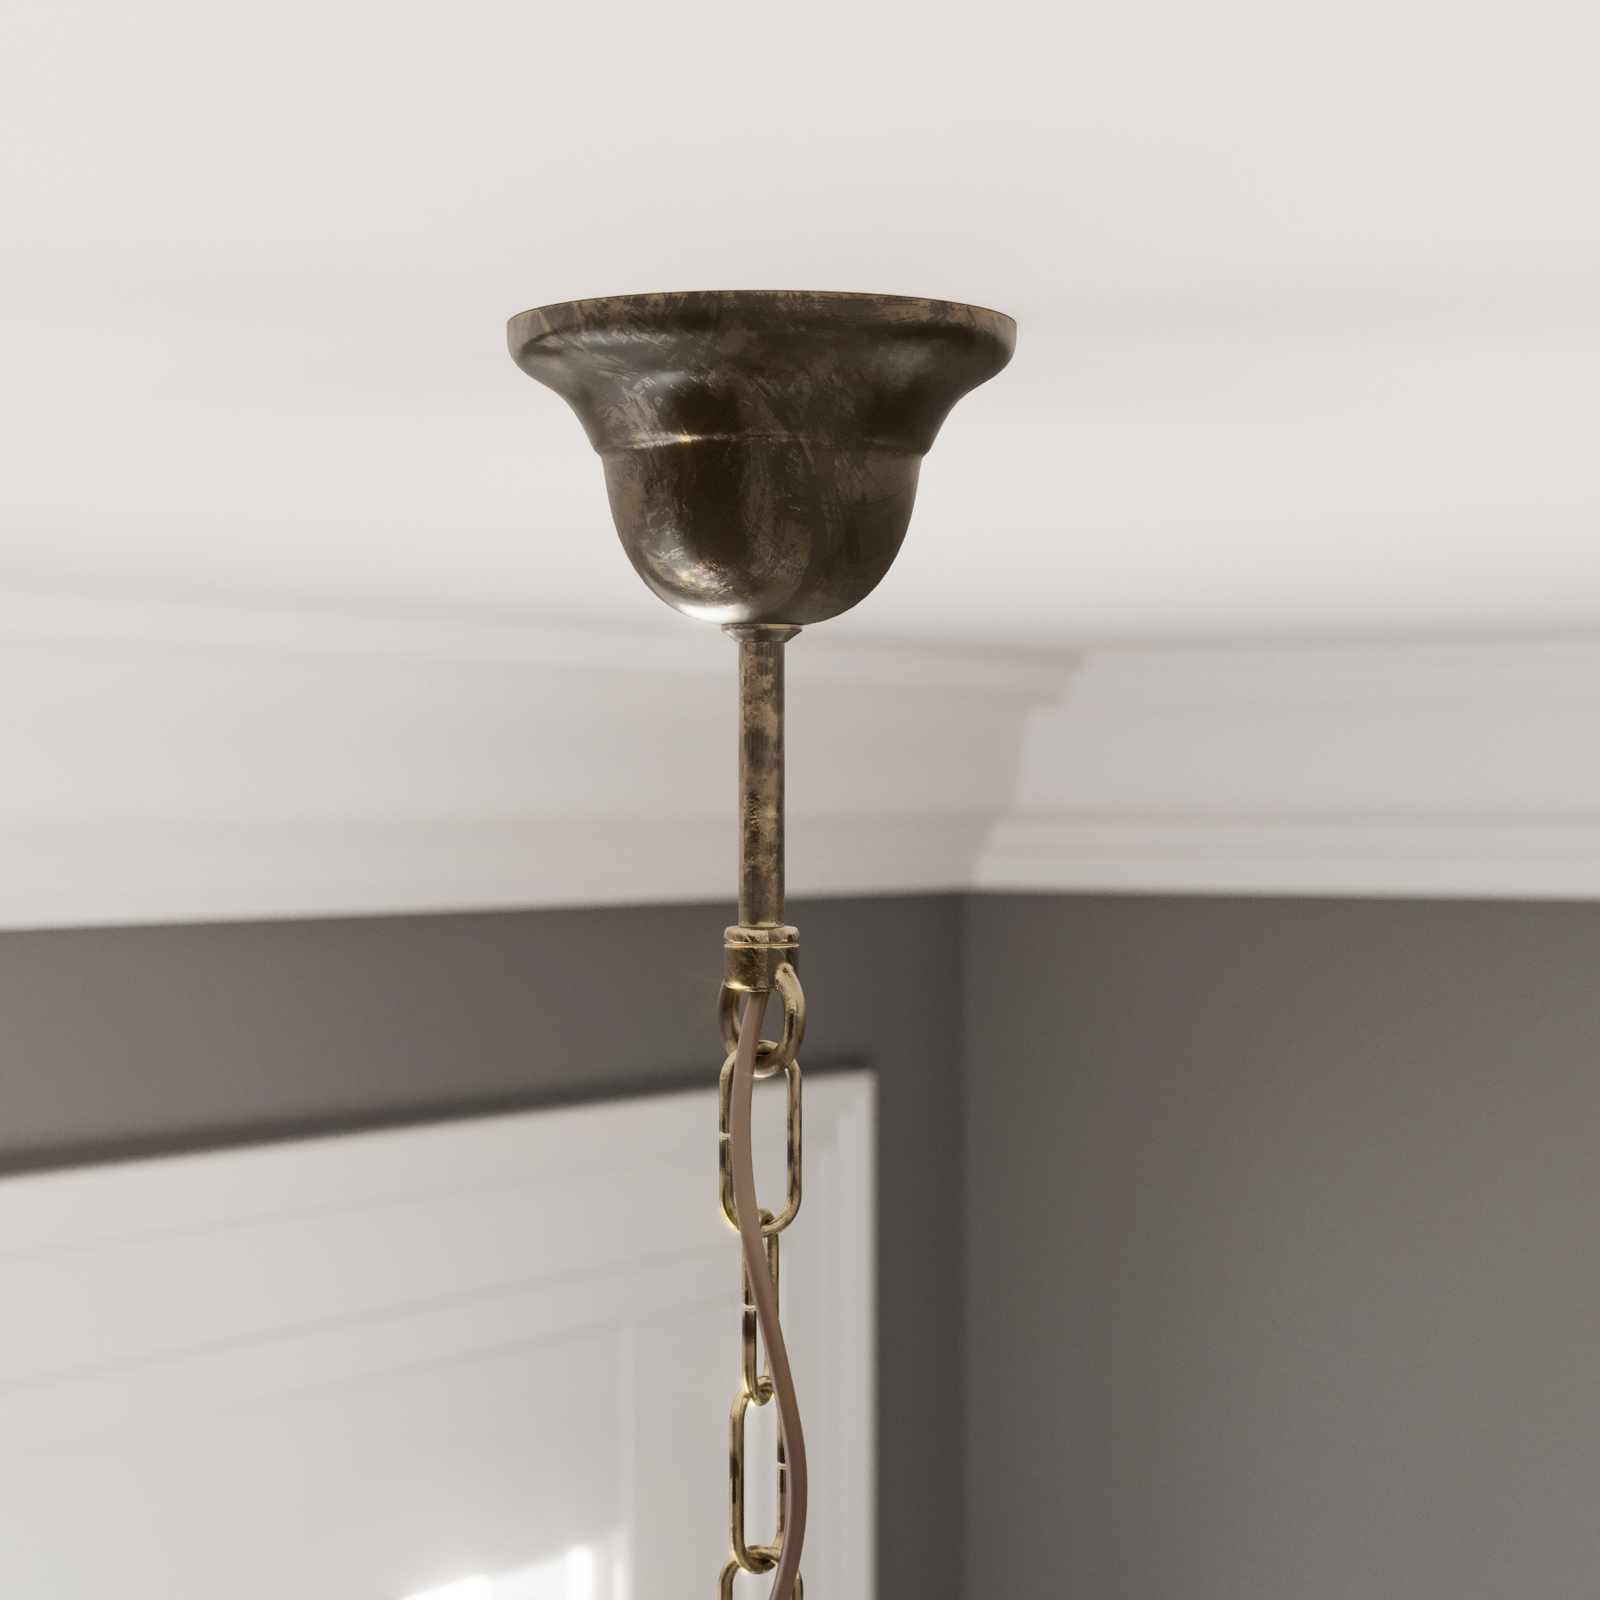 Antica hanglamp in landhuisstijl, 5-lamps